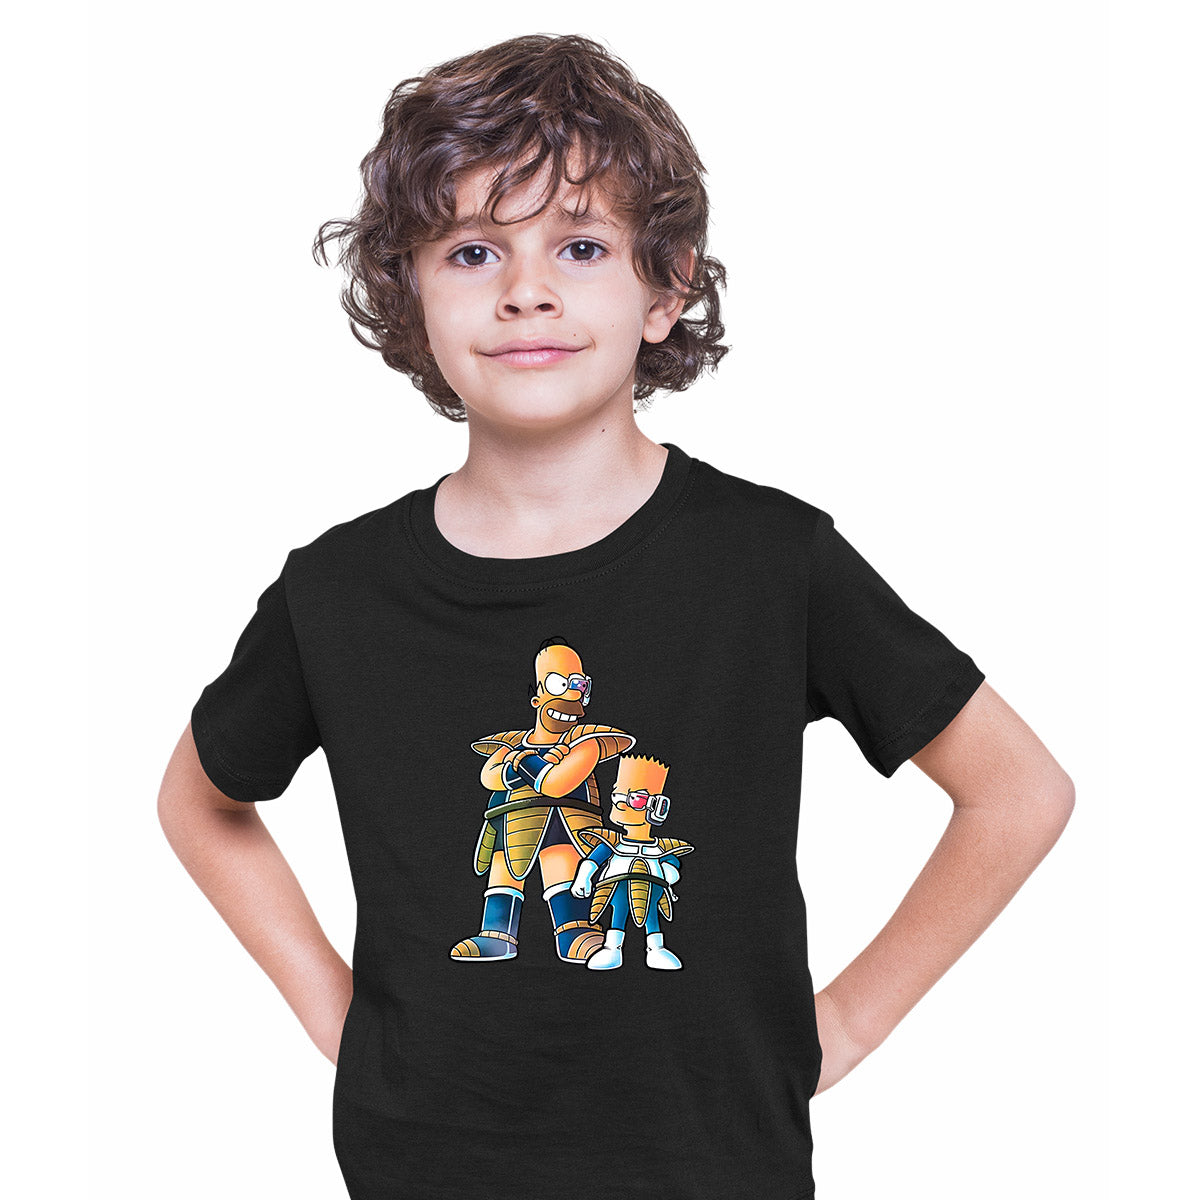 Dragon Bart Simpson And Dragon Ball Anime Manga Black T-shirt for Kids